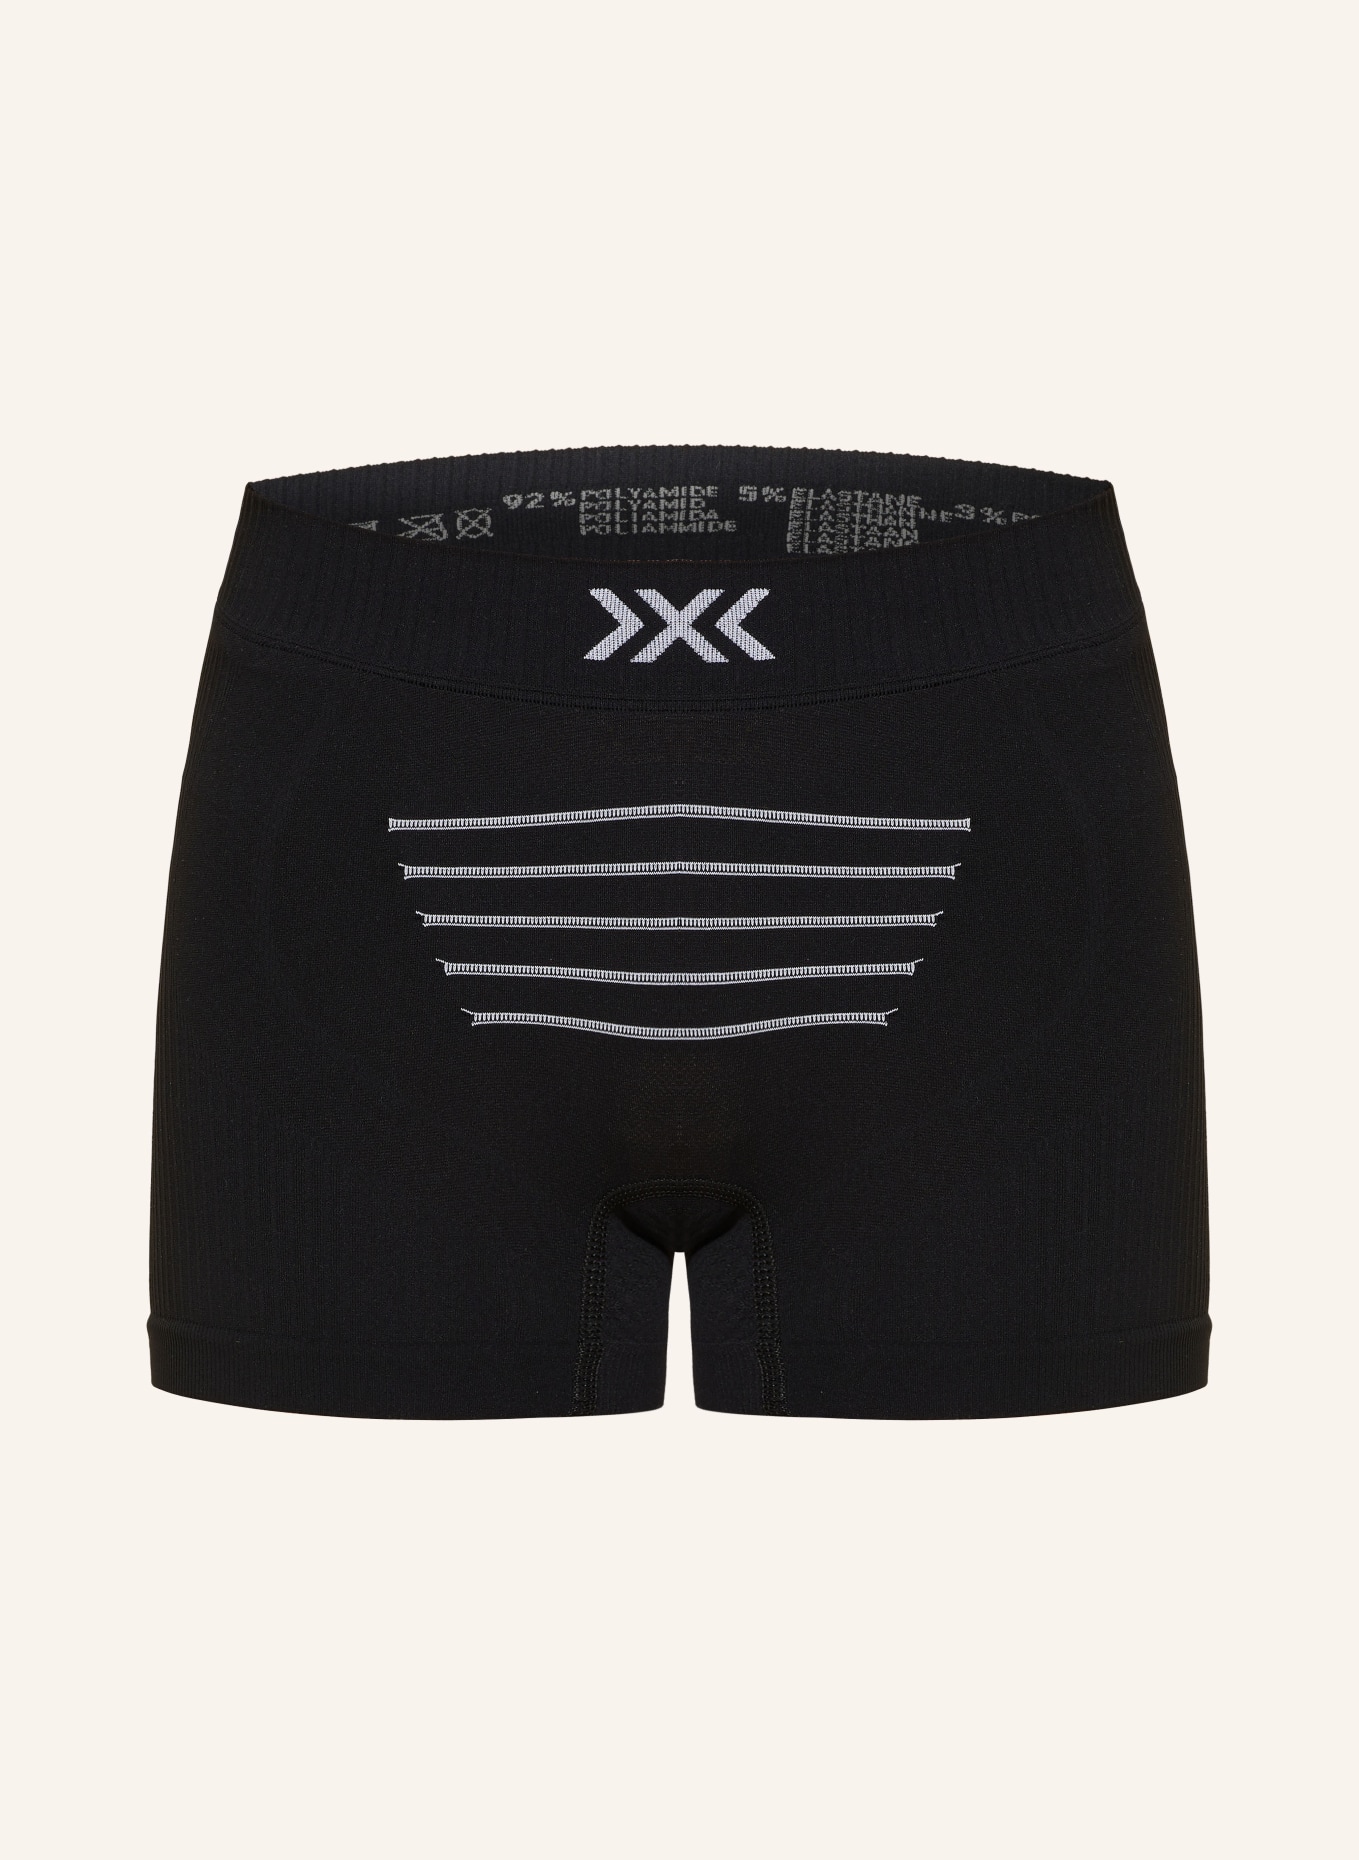 X-BIONIC Funktionswäsche-Shorts X-BIONIC® INVENT 4.0, Farbe: SCHWARZ/ WEISS (Bild 1)